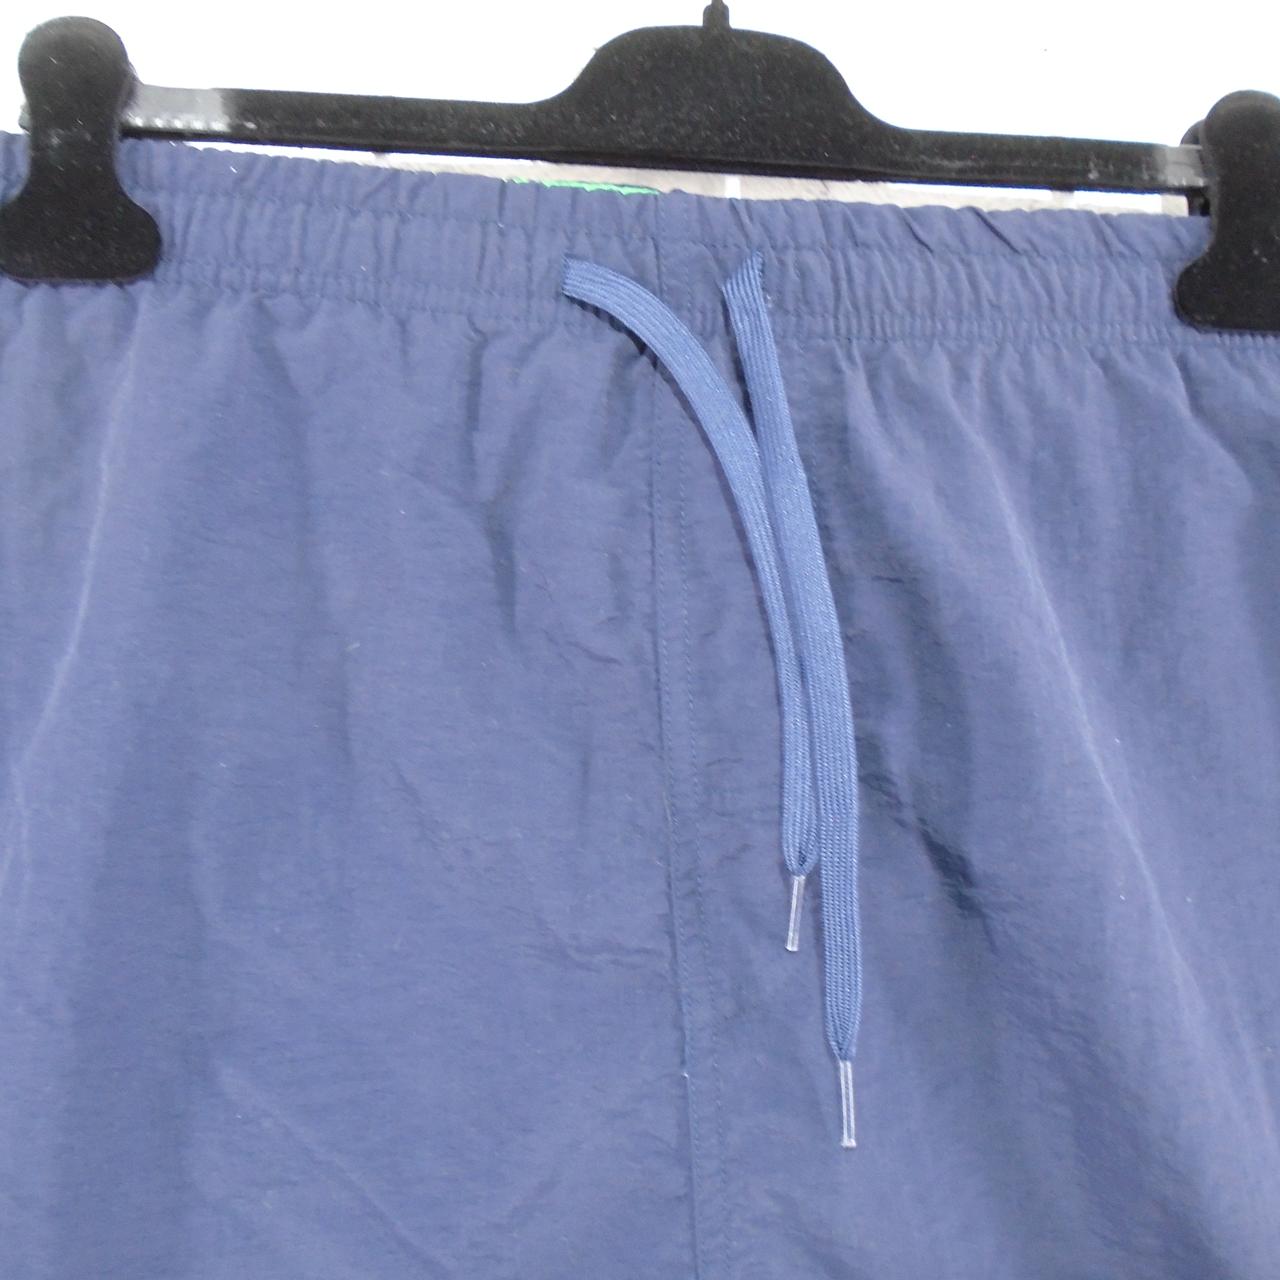 Pantalones cortos para hombre JP. Azul oscuro. DEMASIADO GRANDE. Usado. Muy bien